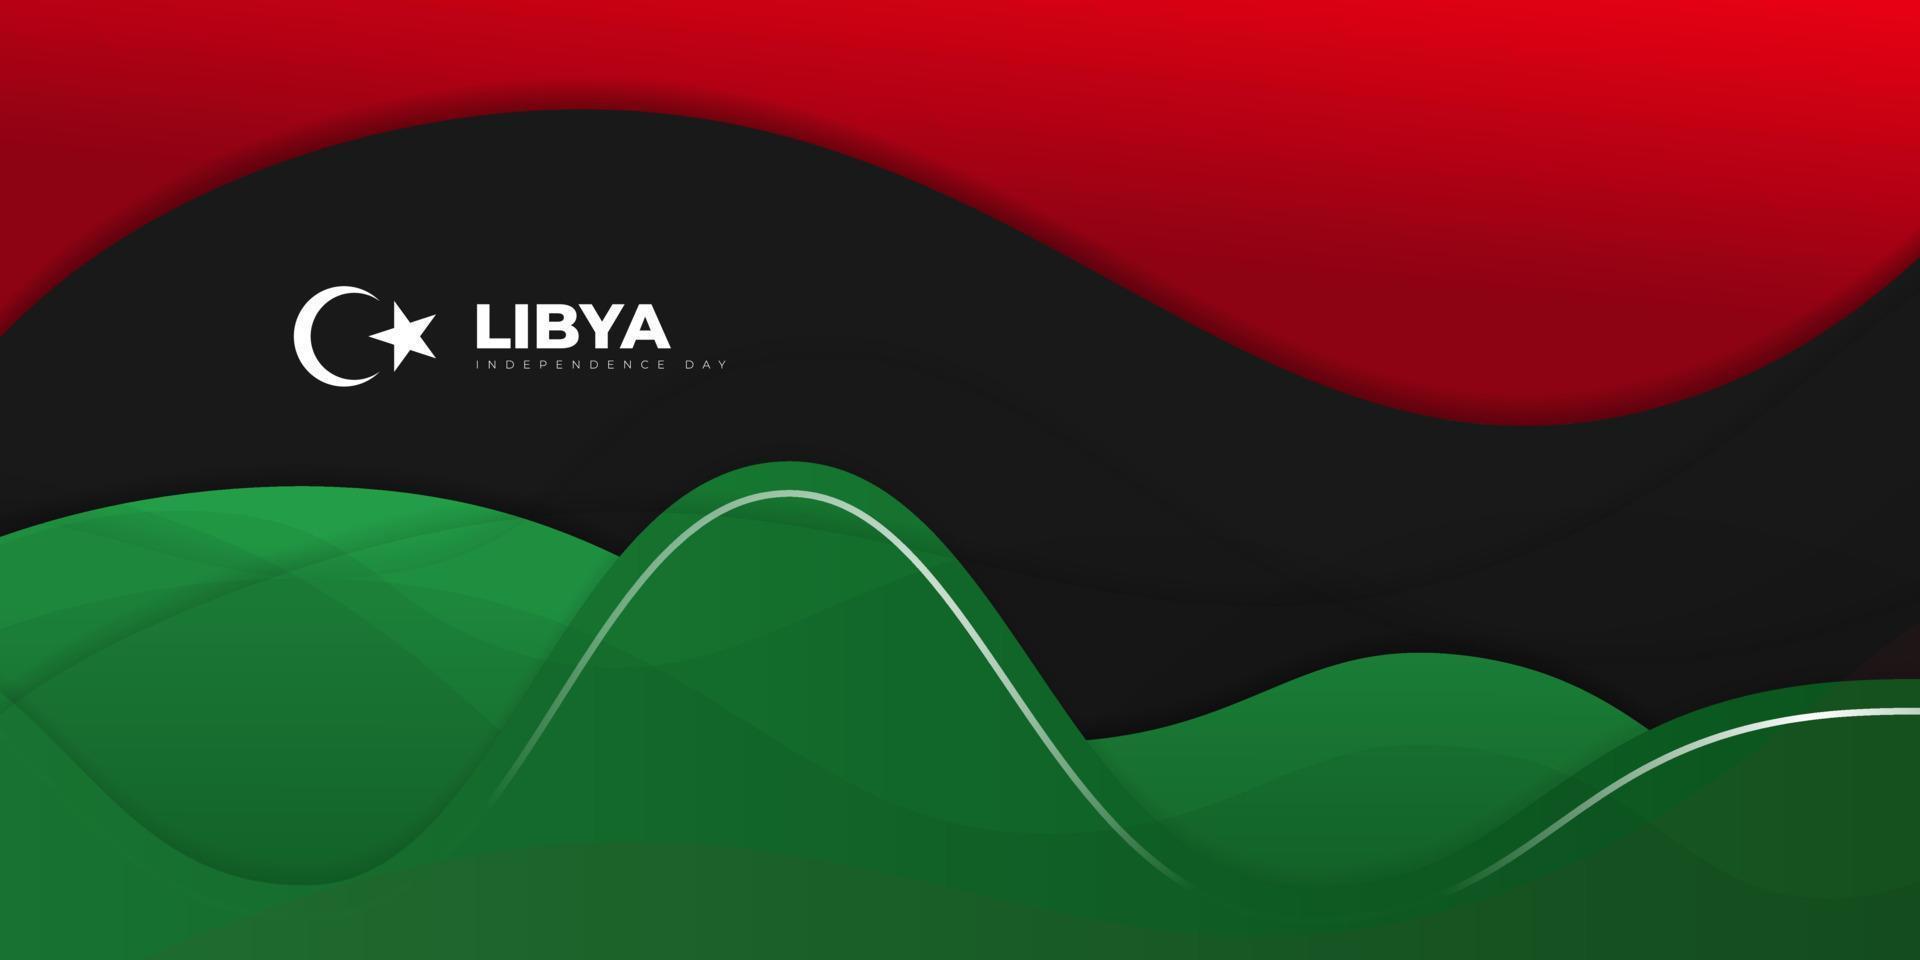 diseño ondulado de fondo rojo, negro y verde. diseño de plantilla del día de la independencia de libia. vector